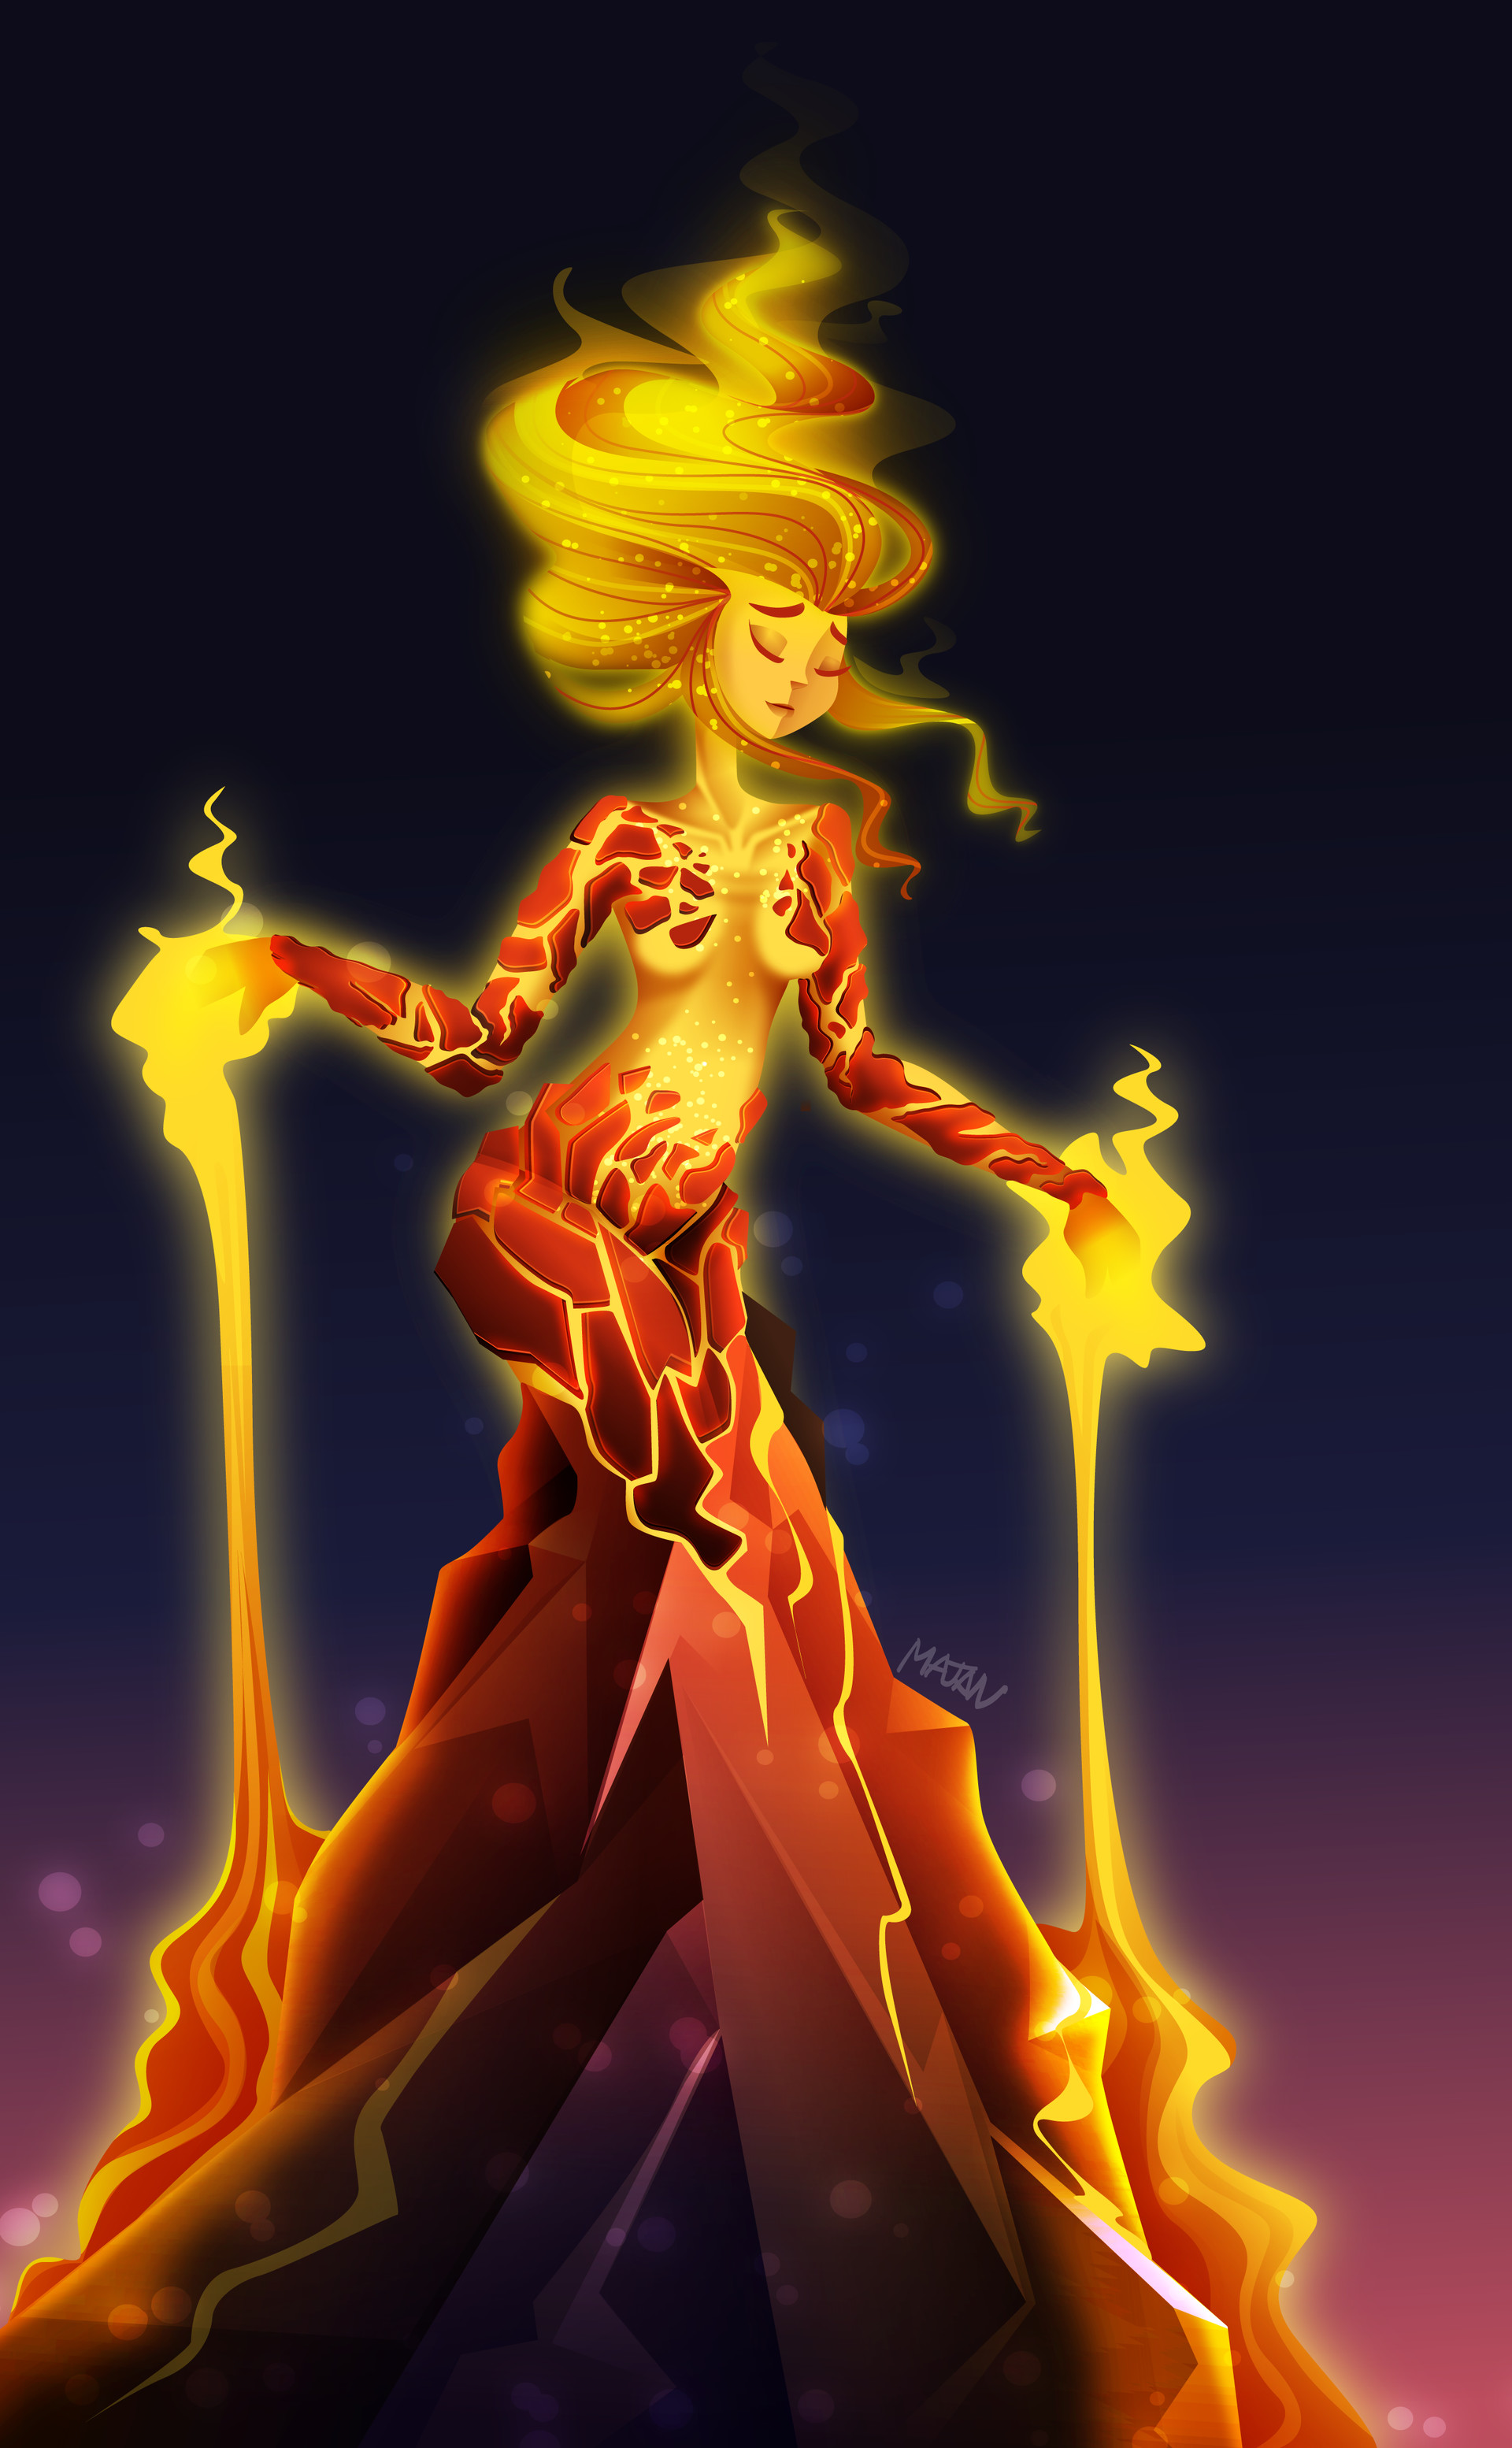 ArtStation - Pele Goddess of Fire